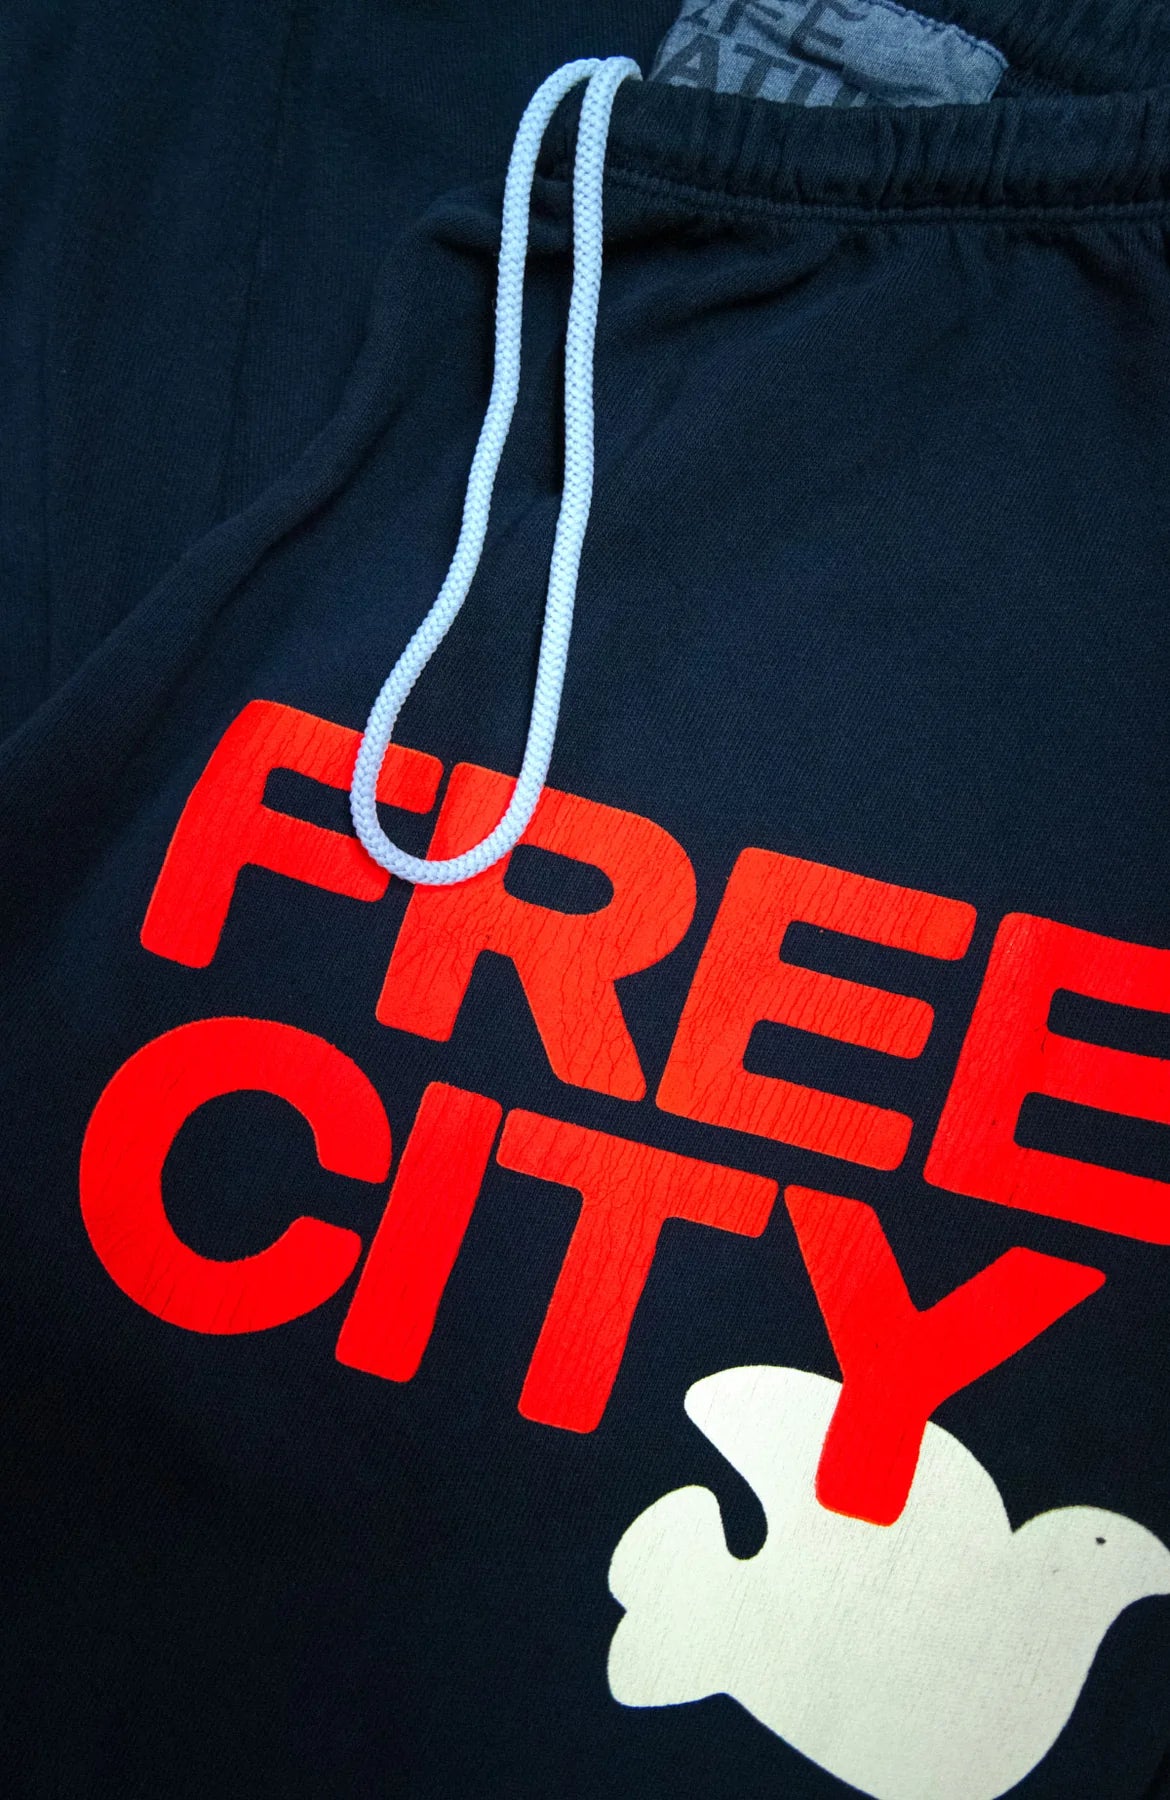 Large Logo Sweatpants - FREE CITY, Luxury Designer Fashion